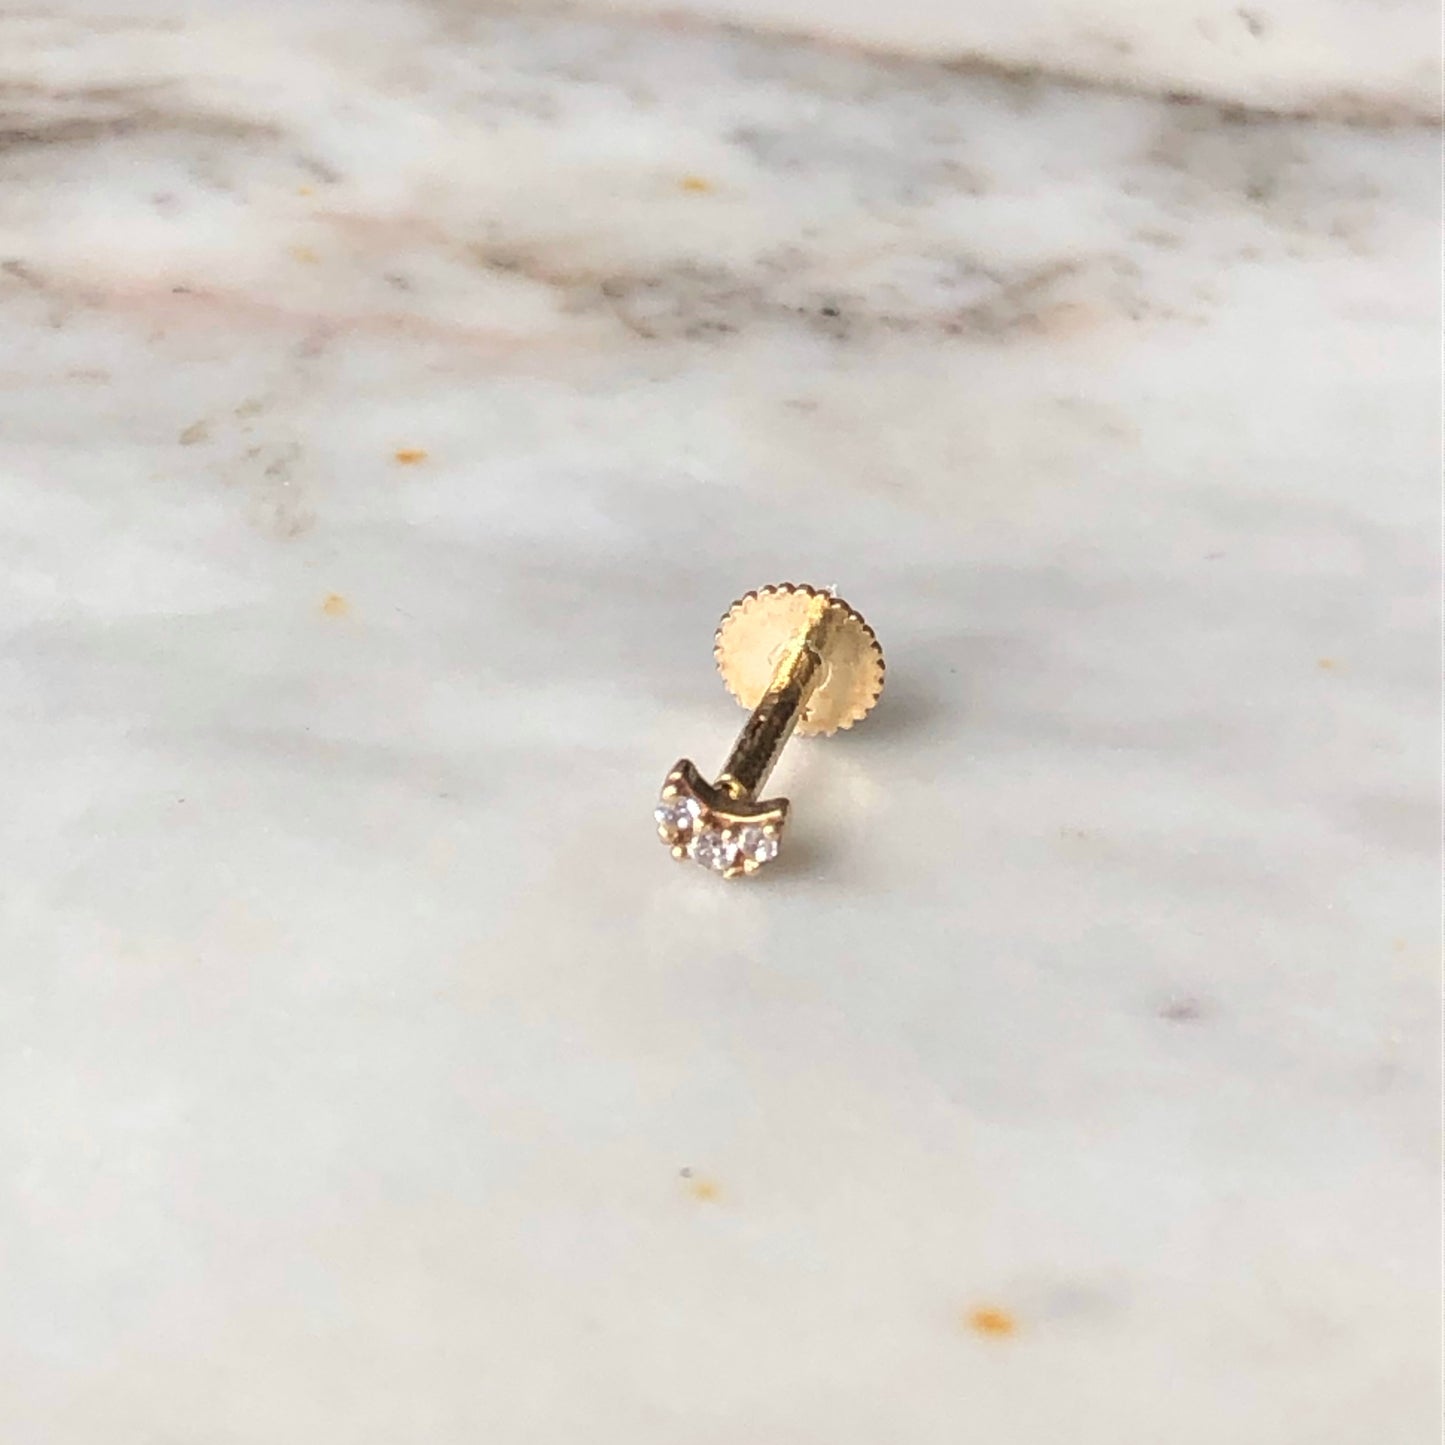 Arete piercing single de lunita mini con circonitas en oro amarillo de 14k con tope ortopédico